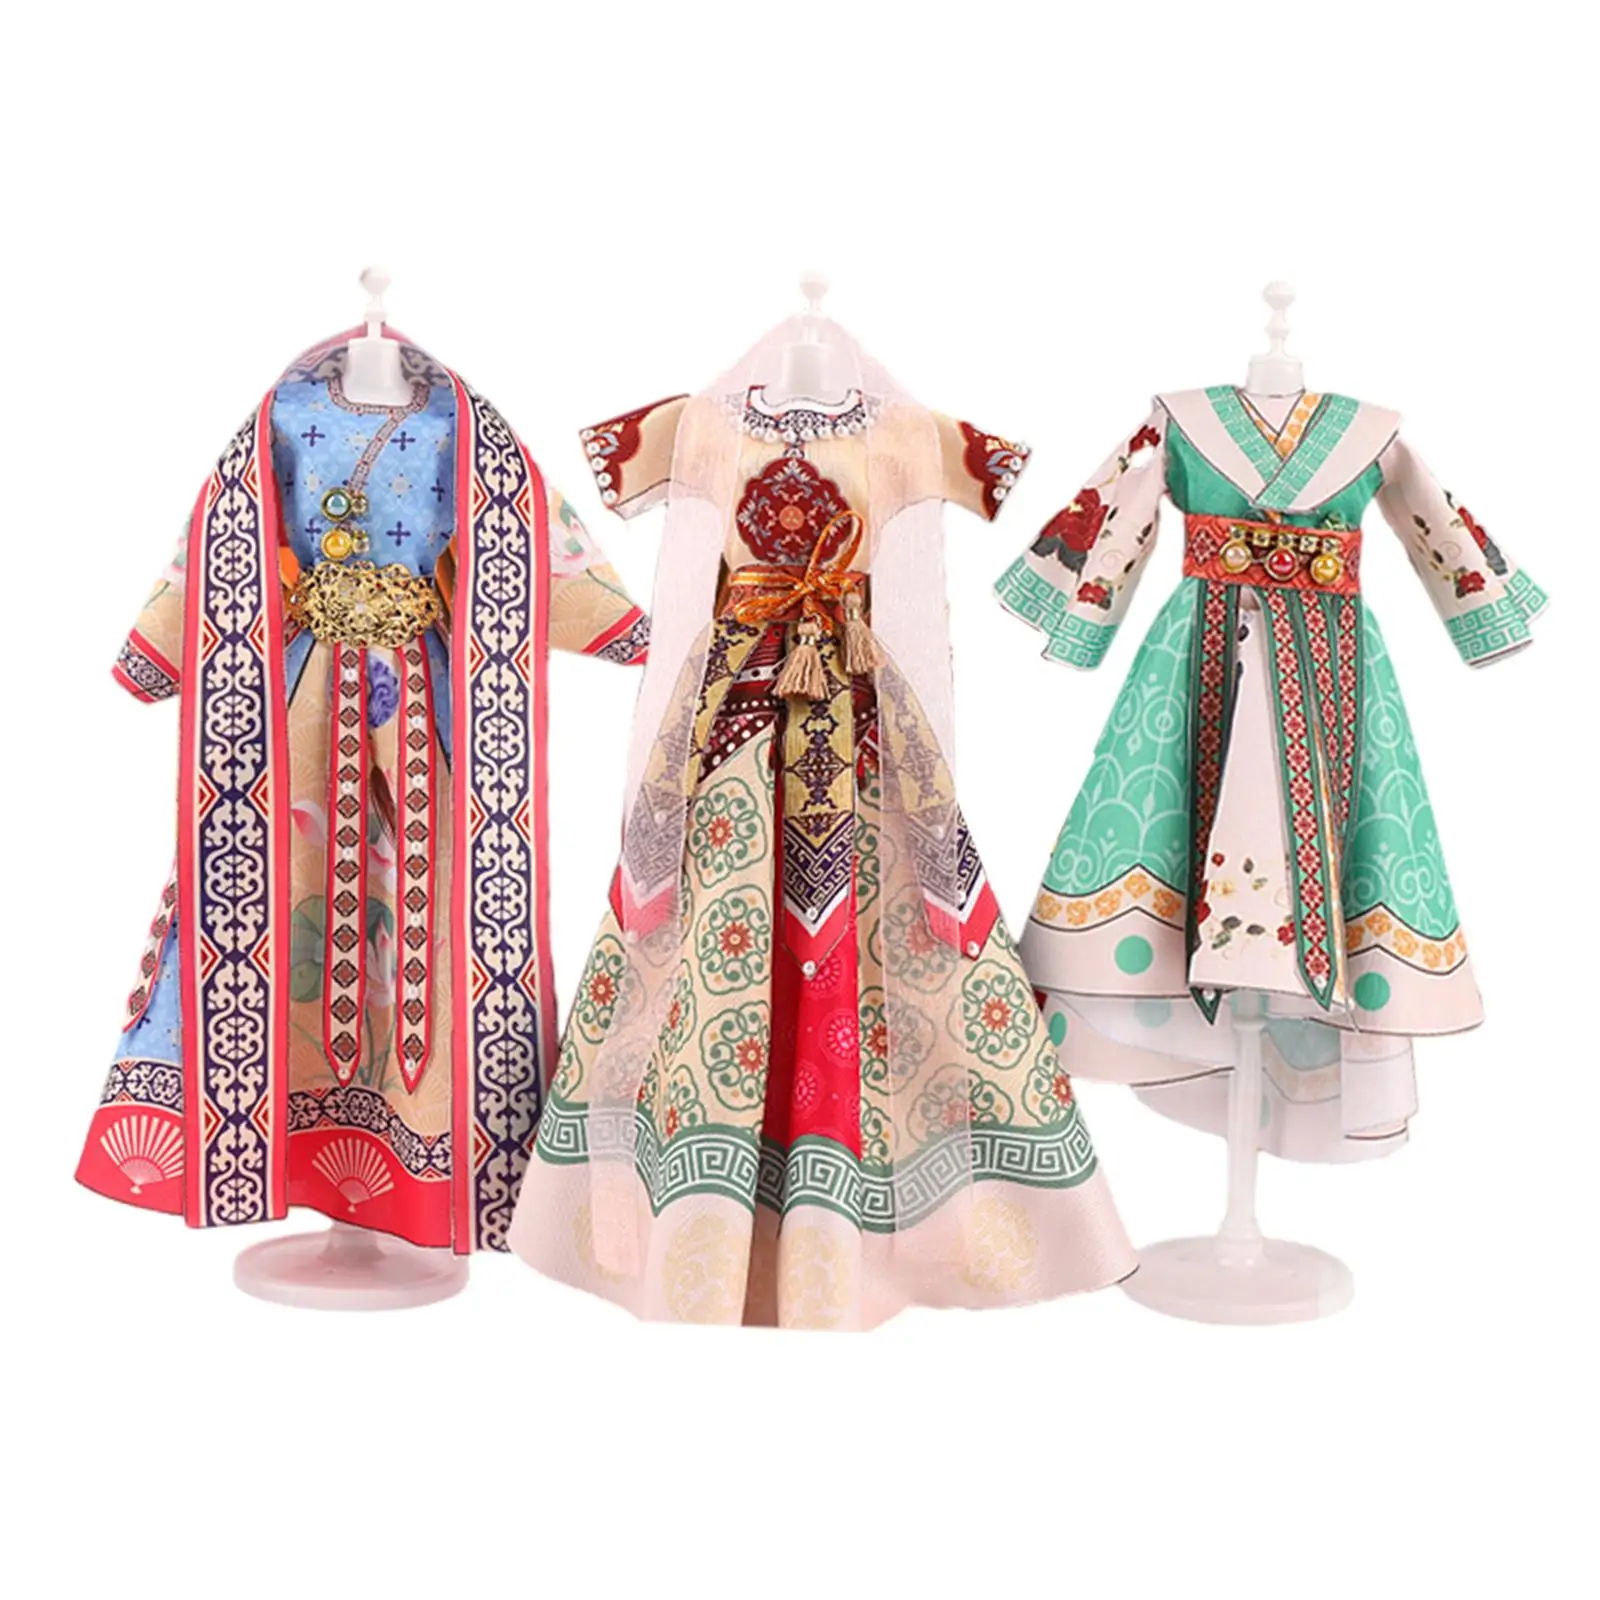 

Модные дизайнерские наборы, творческие куклы принцессы, одежда для изготовления детской одежды, наборы для шитья для девочек, подростков, От 8 до 12 лет, начинающих, детей